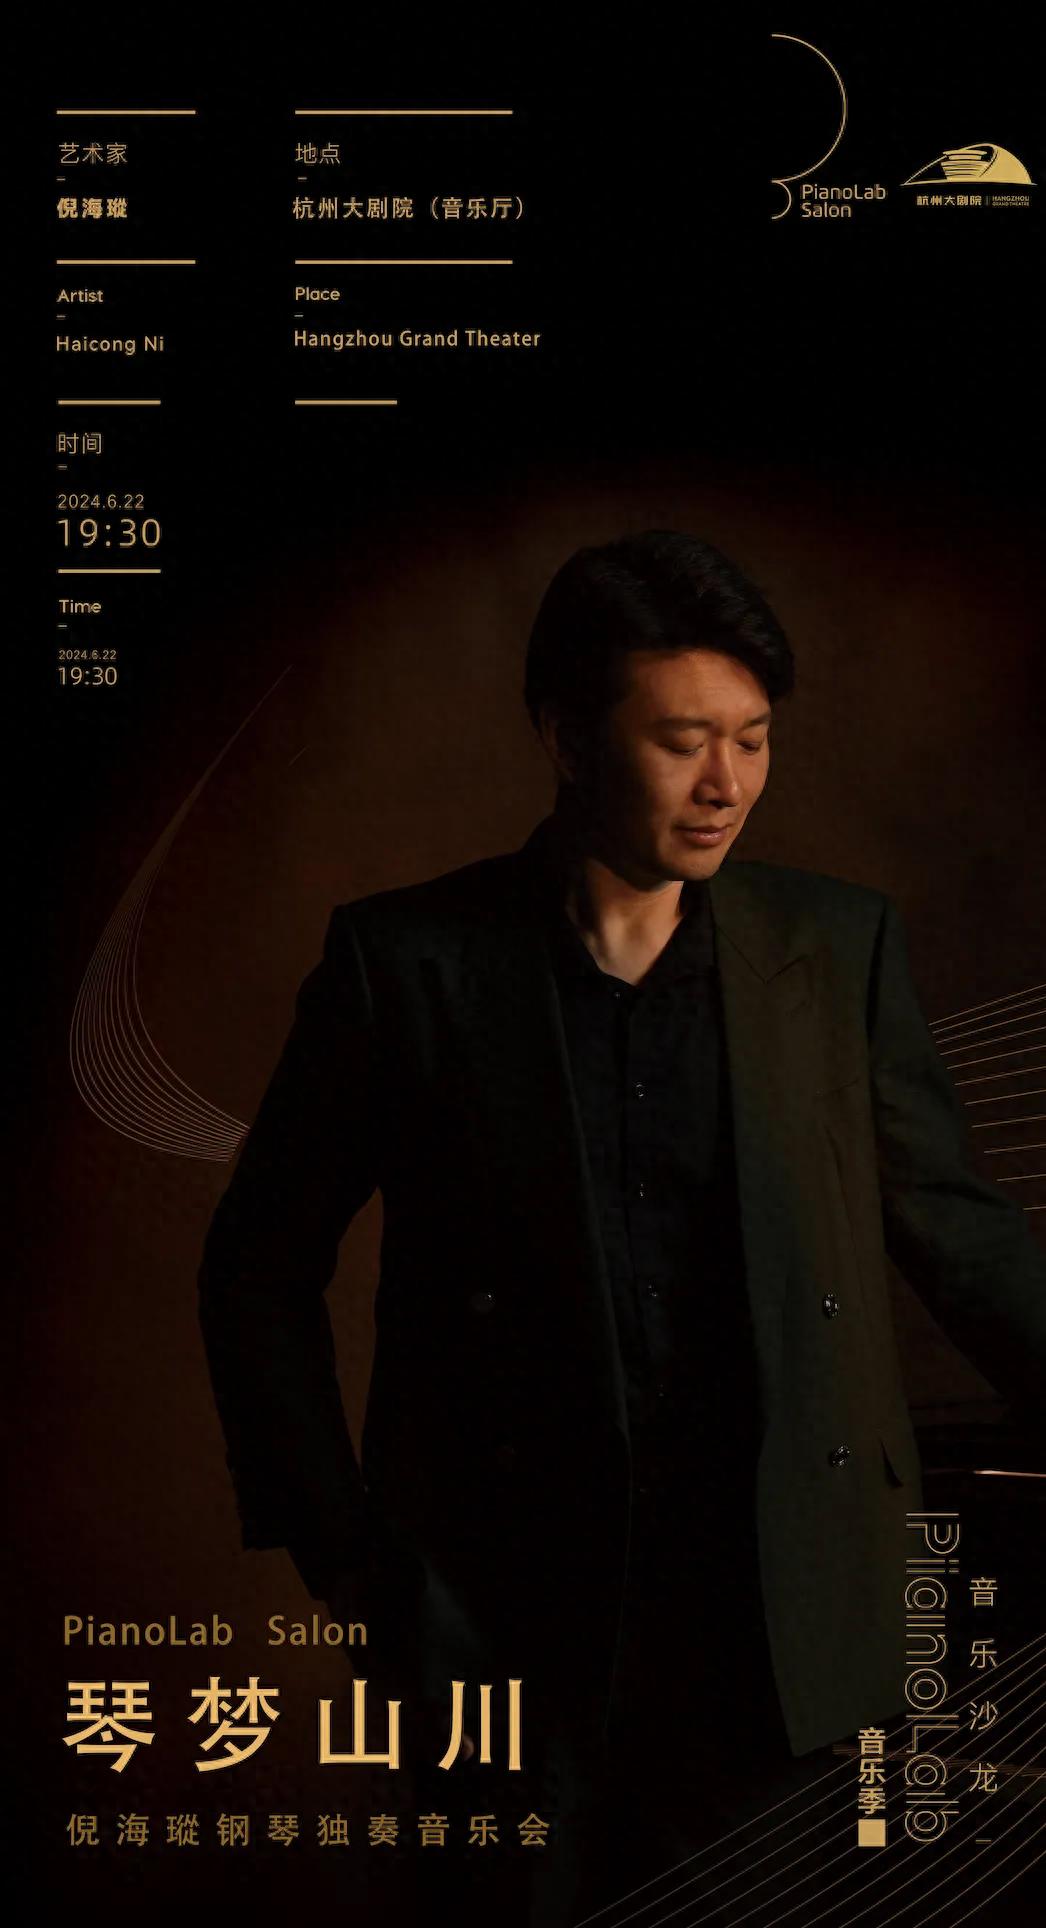 倪海瑽,钢琴演奏家,美国密歇根州立大学音乐艺术博士(dm